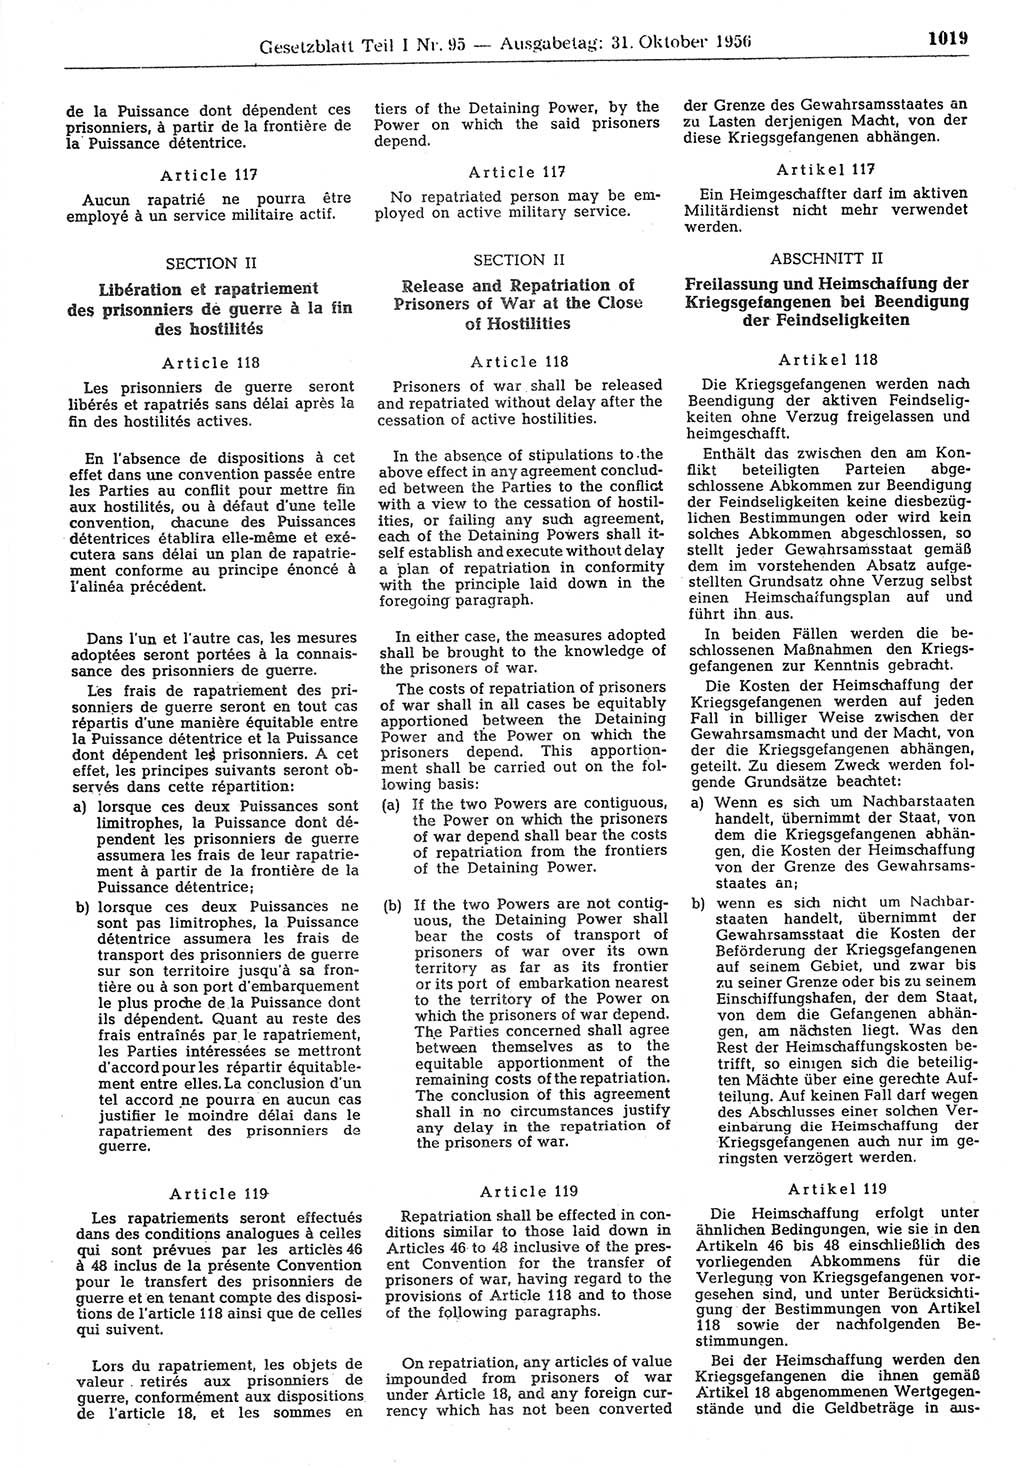 Gesetzblatt (GBl.) der Deutschen Demokratischen Republik (DDR) Teil Ⅰ 1956, Seite 1019 (GBl. DDR Ⅰ 1956, S. 1019)